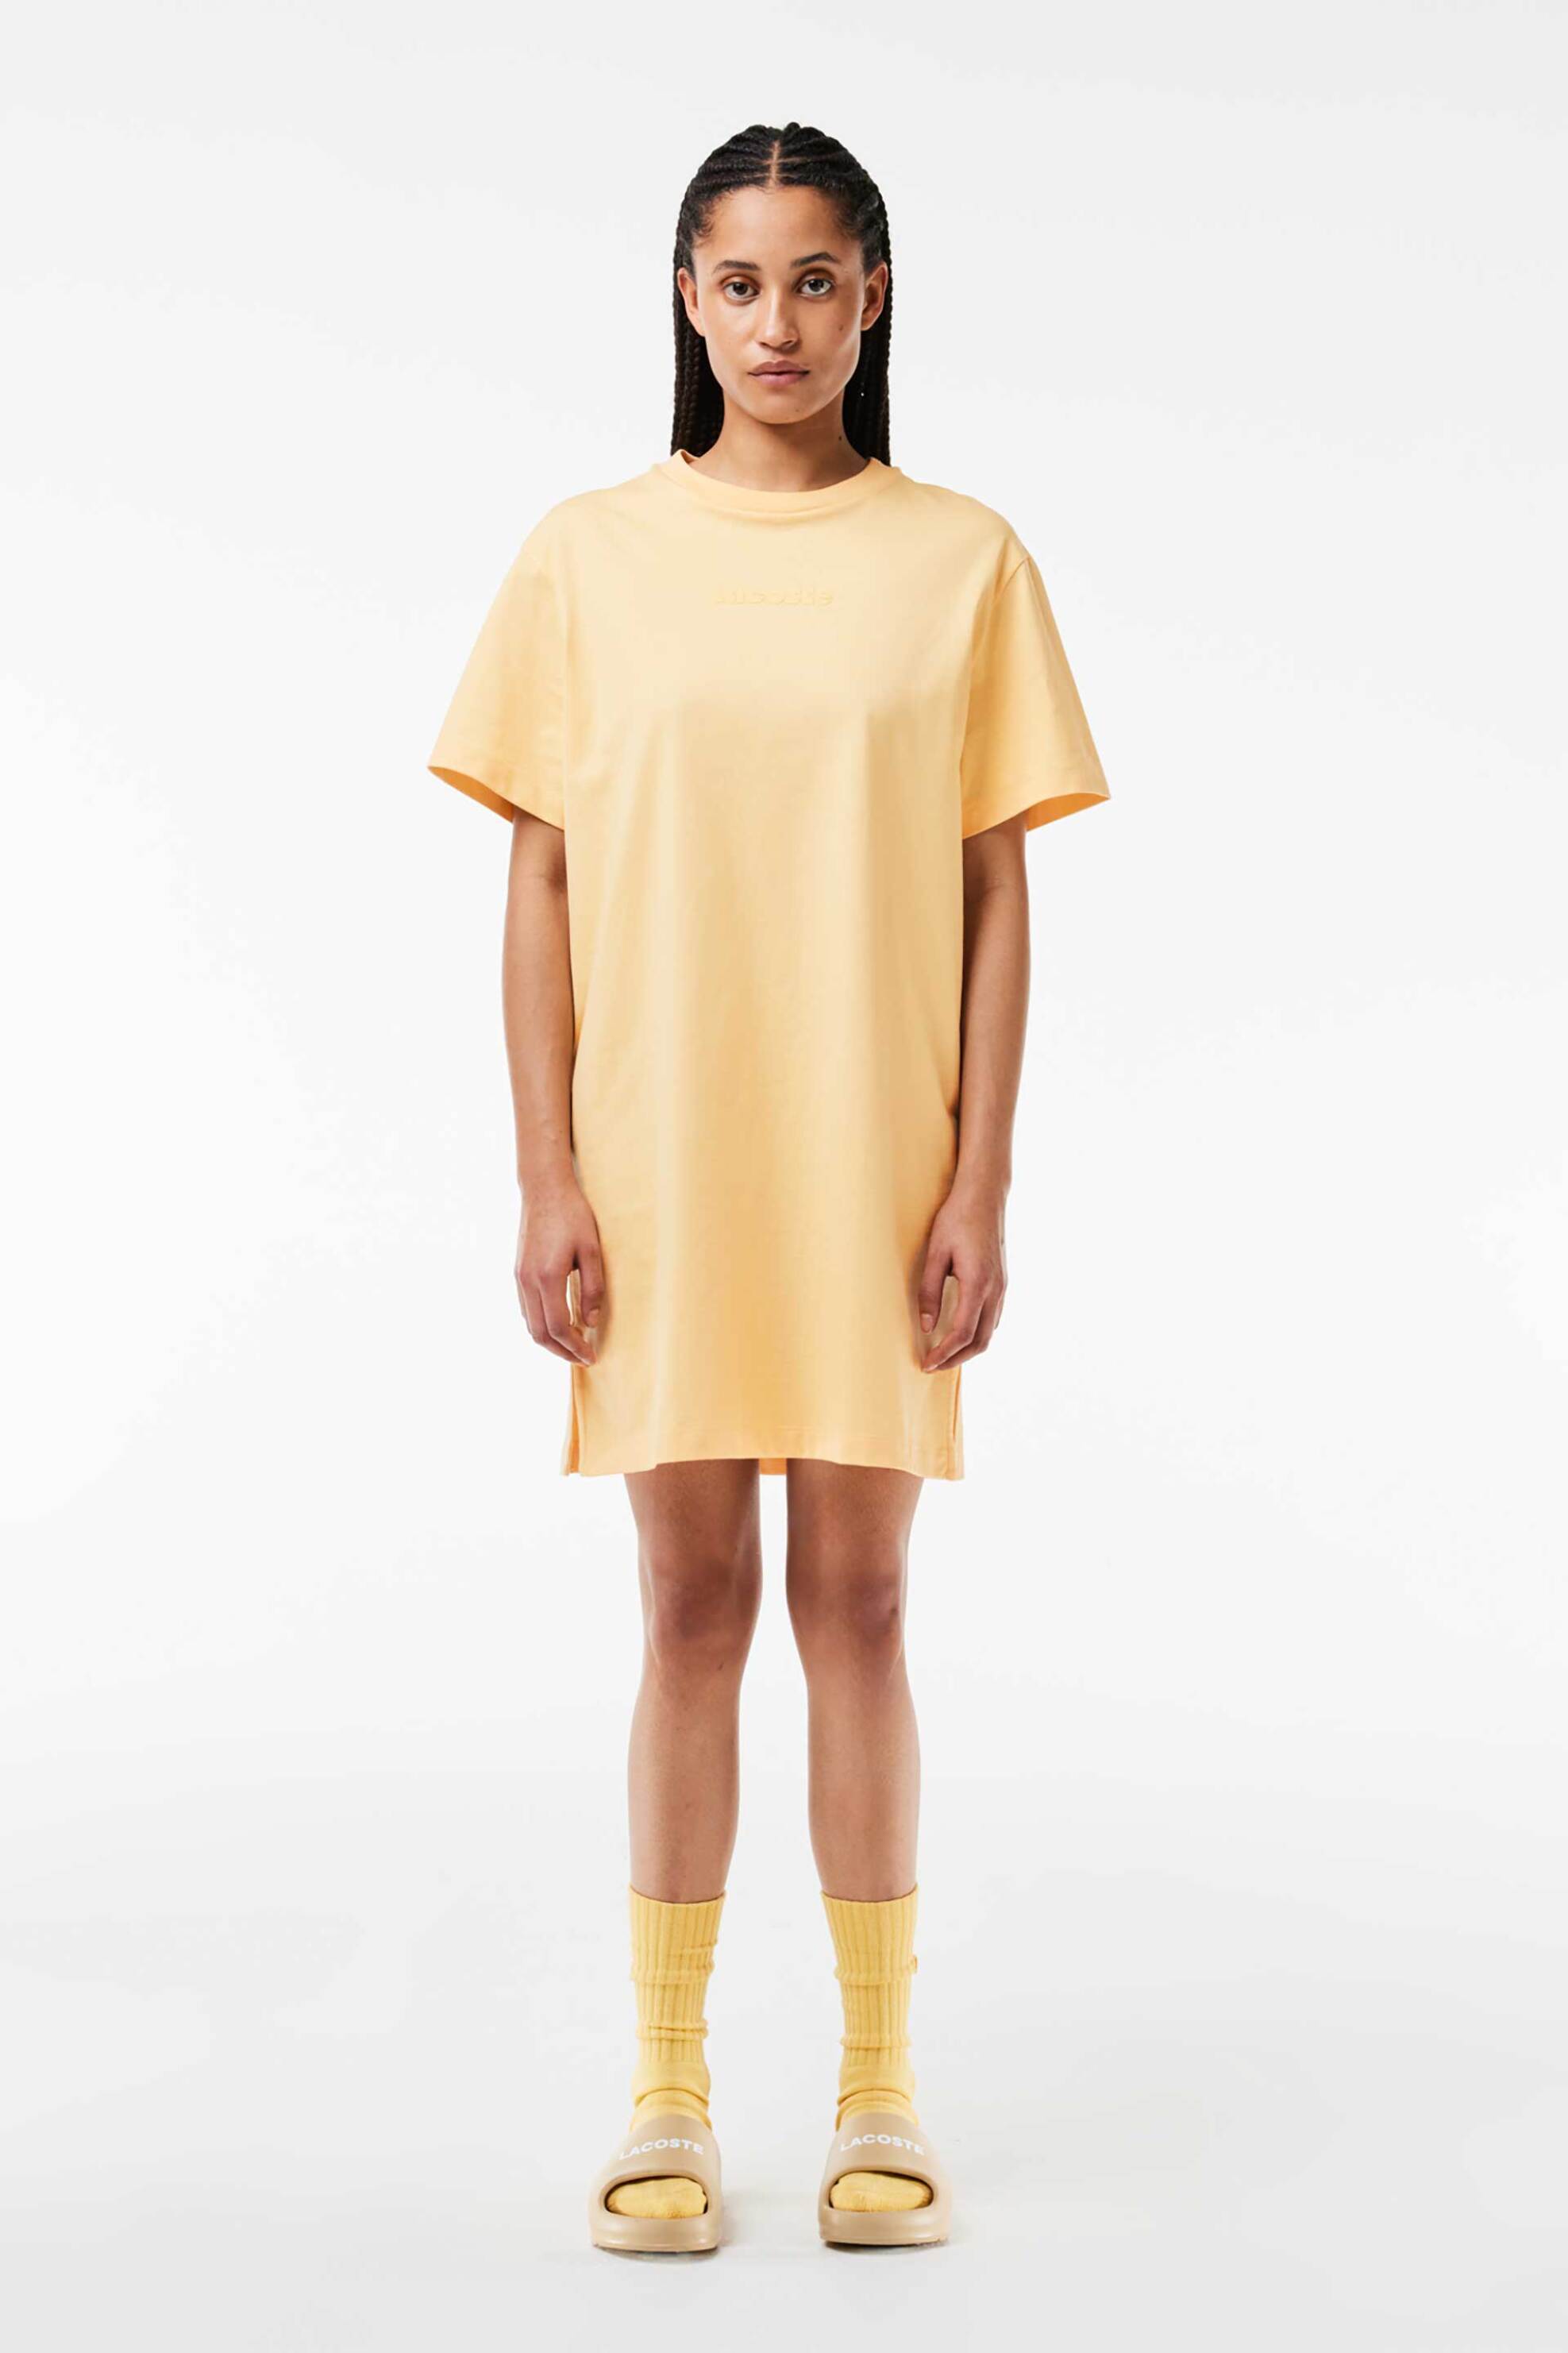 Γυναικεία Ρούχα & Αξεσουάρ > Γυναικεία Ρούχα > Γυναικεία Φορέματα > Γυναικεία Φορέματα Μίνι Lacoste γυναικείο mini φόρεμα σε στυλ T-Shirt με λογότυπο - EF7287 Κίτρινο